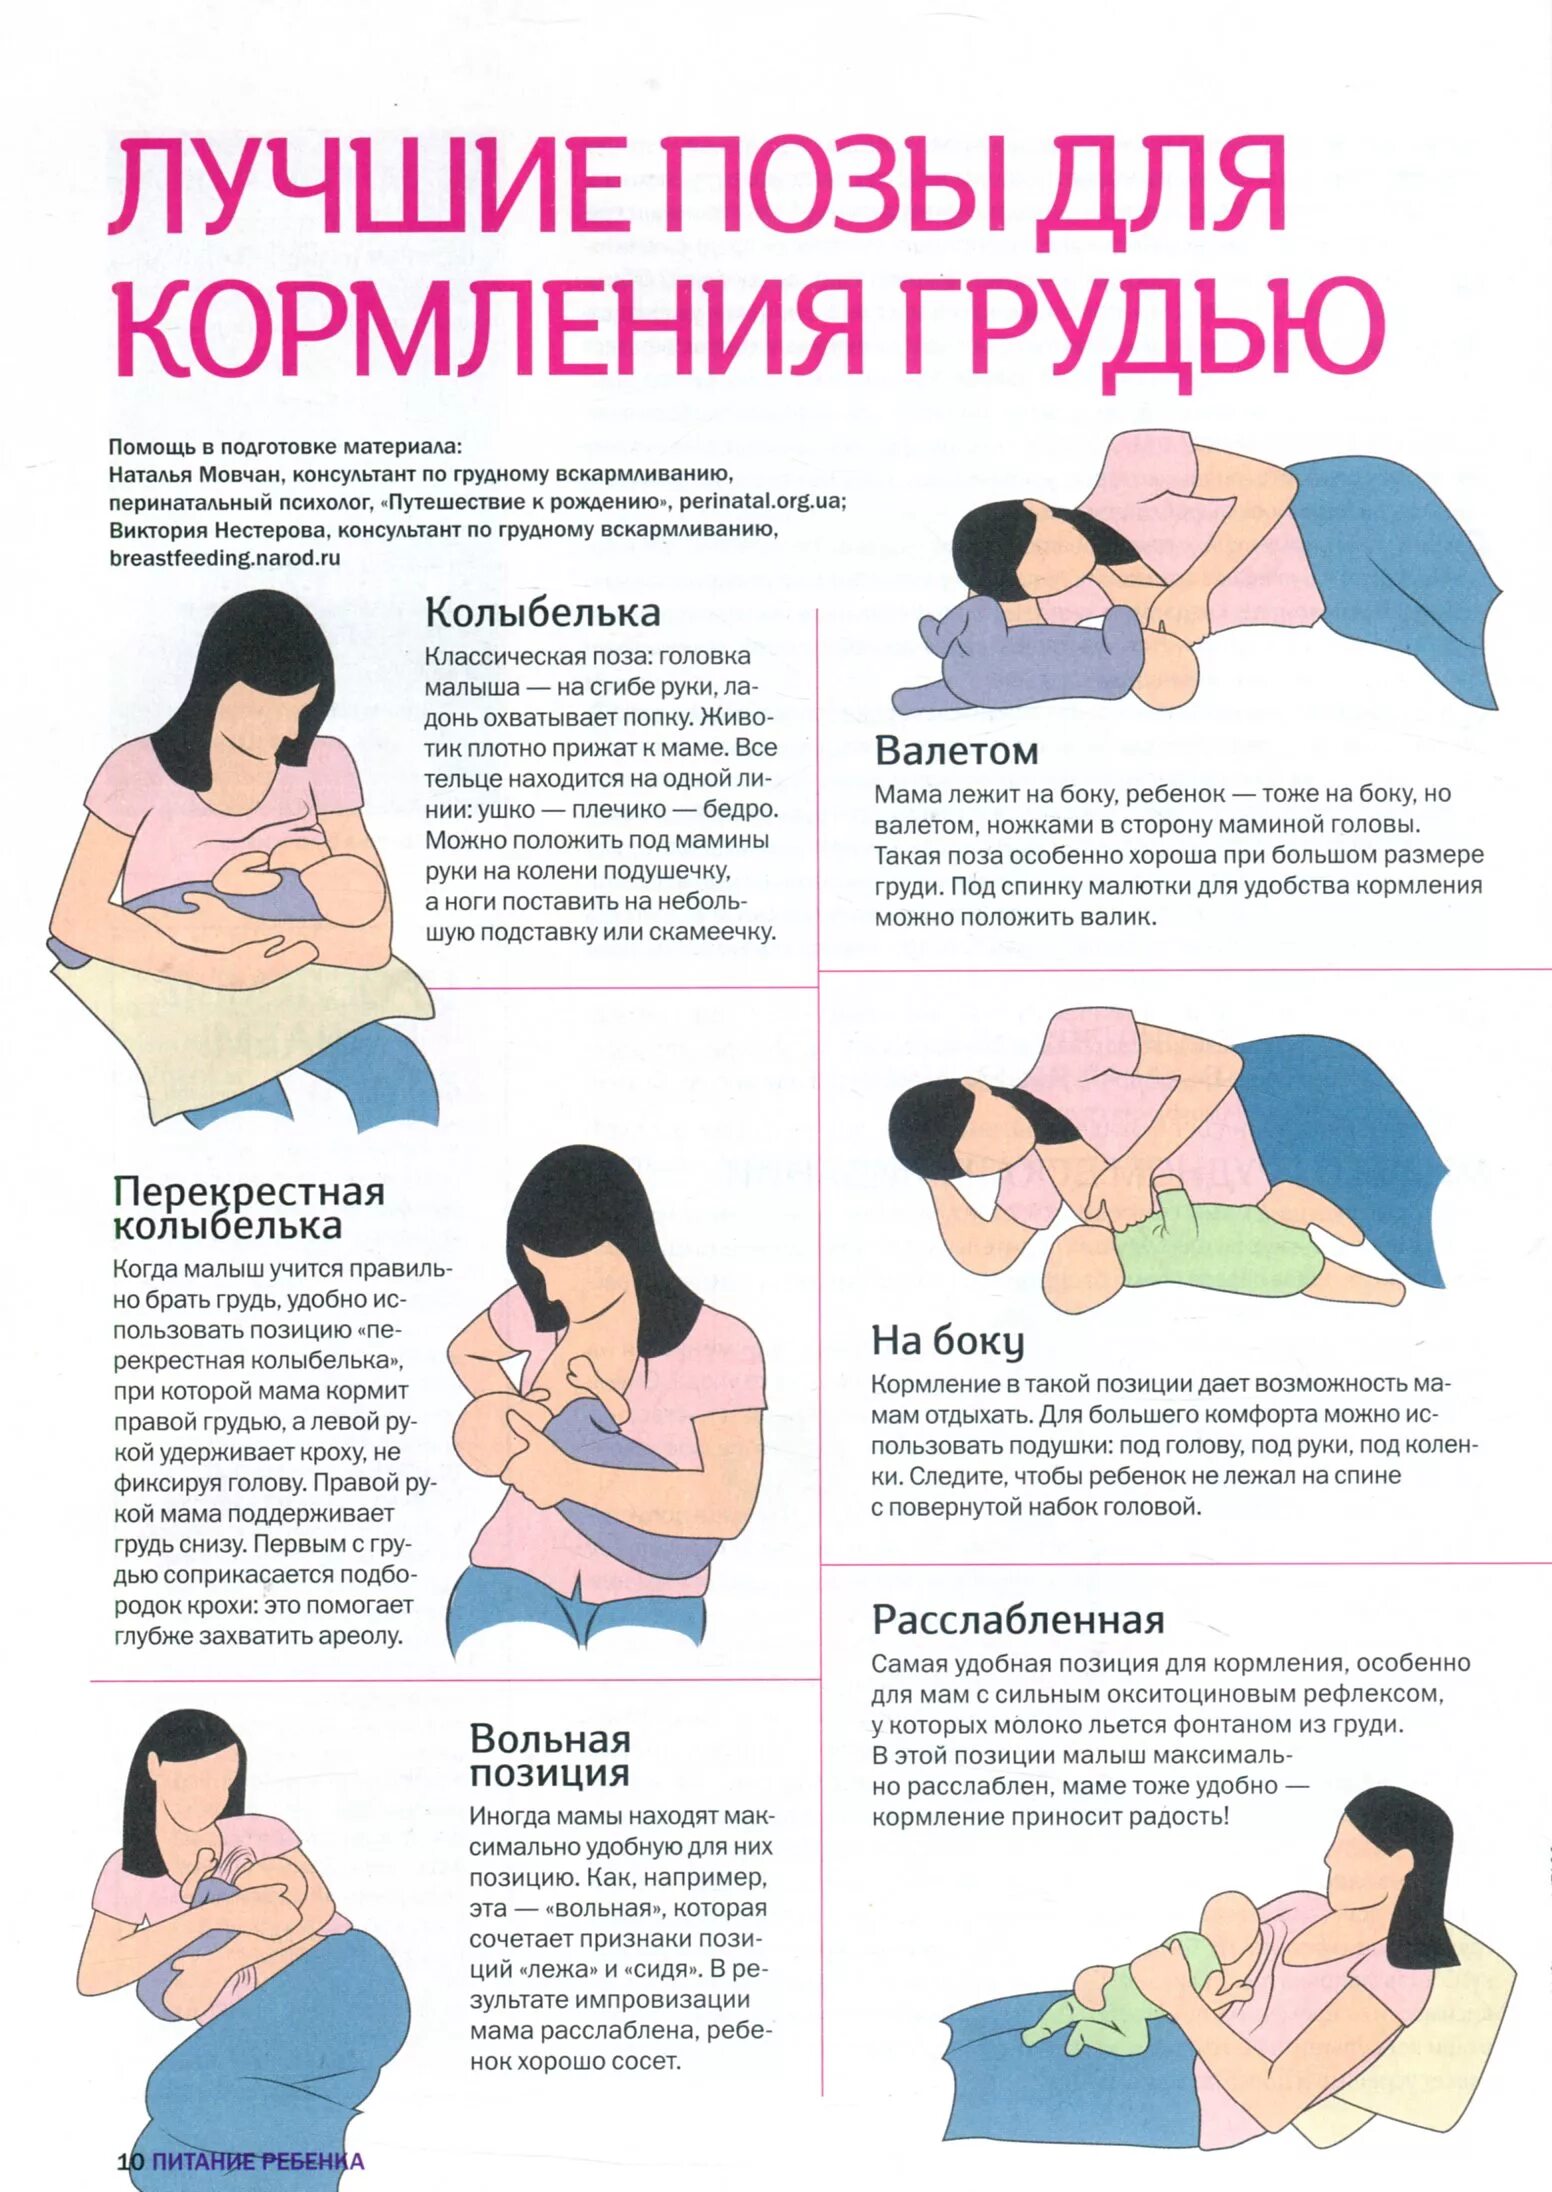 Правильный захват груди при гв. Правильное прикладывание ребенка при грудном вскармливании. Способы прикладывания ребенка при грудном вскармливании. Как правильно прикладывать новорожденного для кормления лежа на боку.